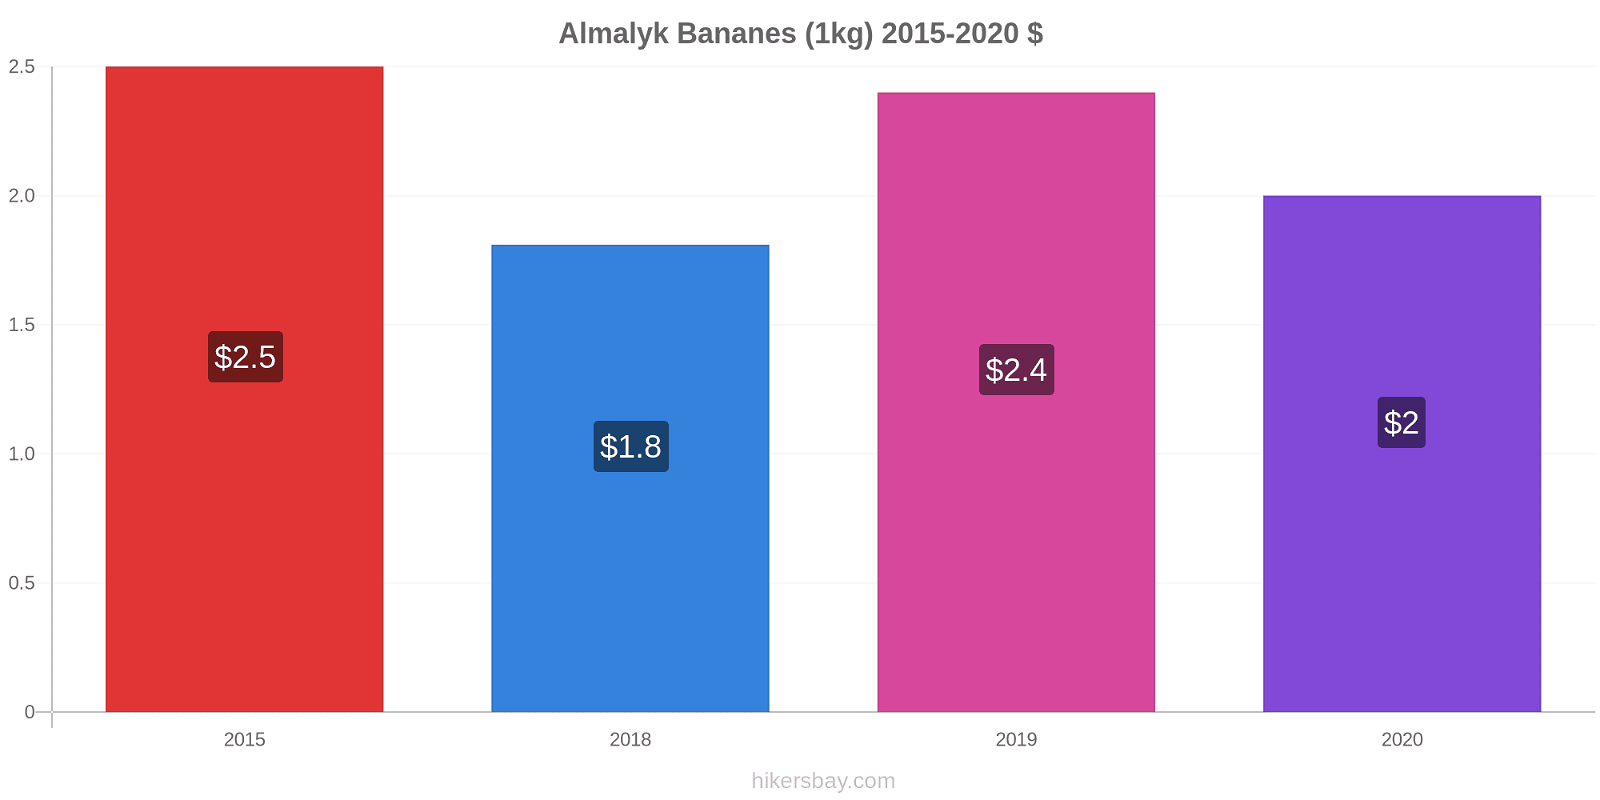 Almalyk changements de prix Bananes (1kg) hikersbay.com